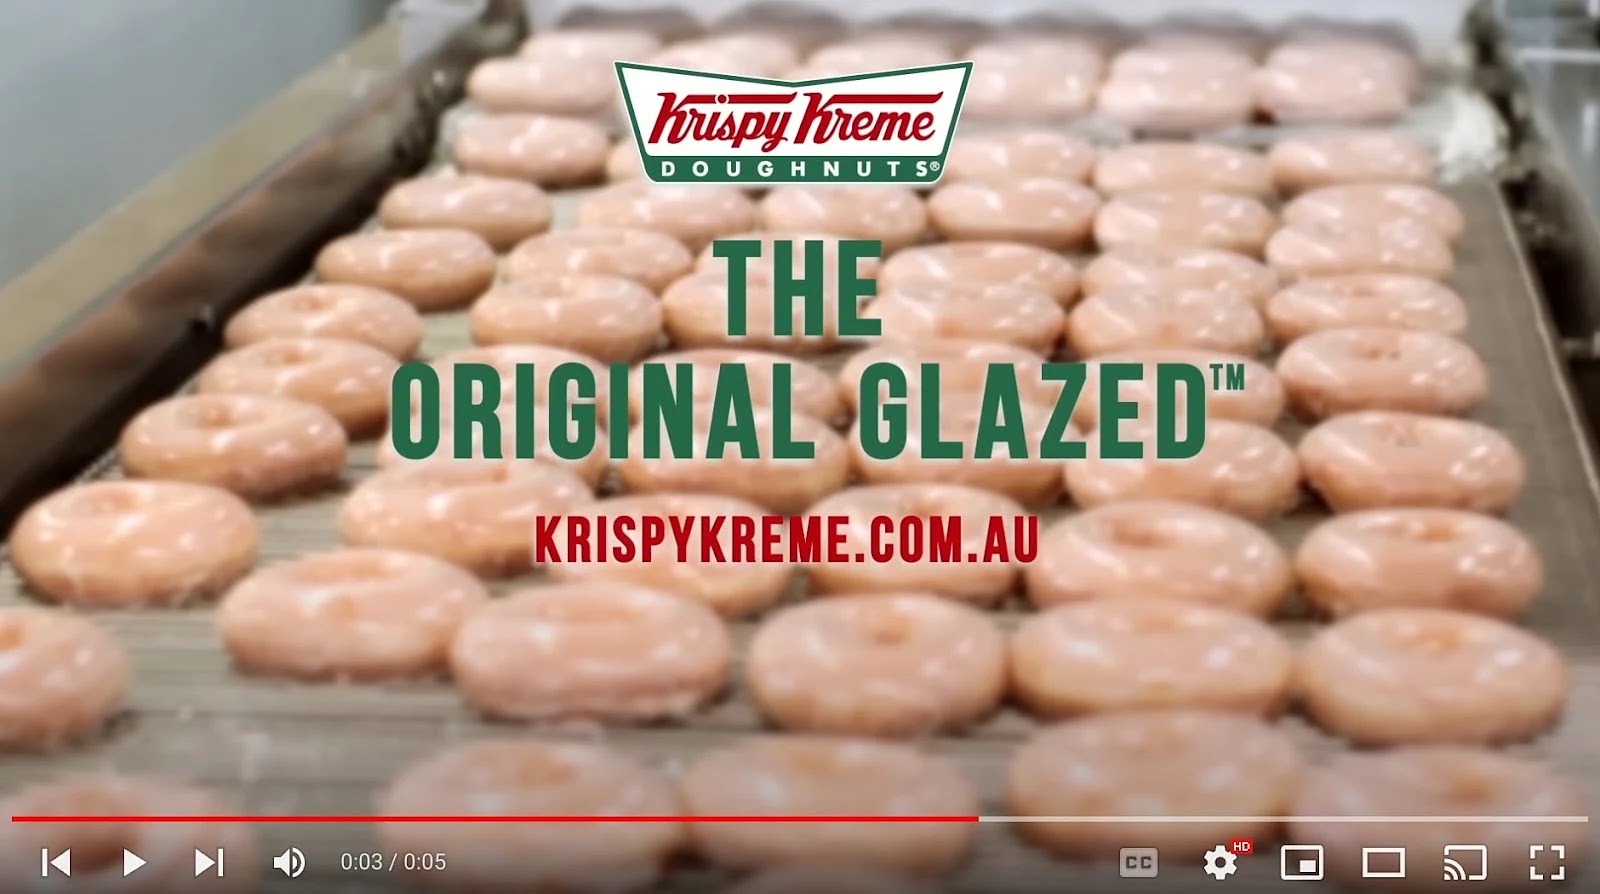 A bumper advertisement  by Krispy Kreme